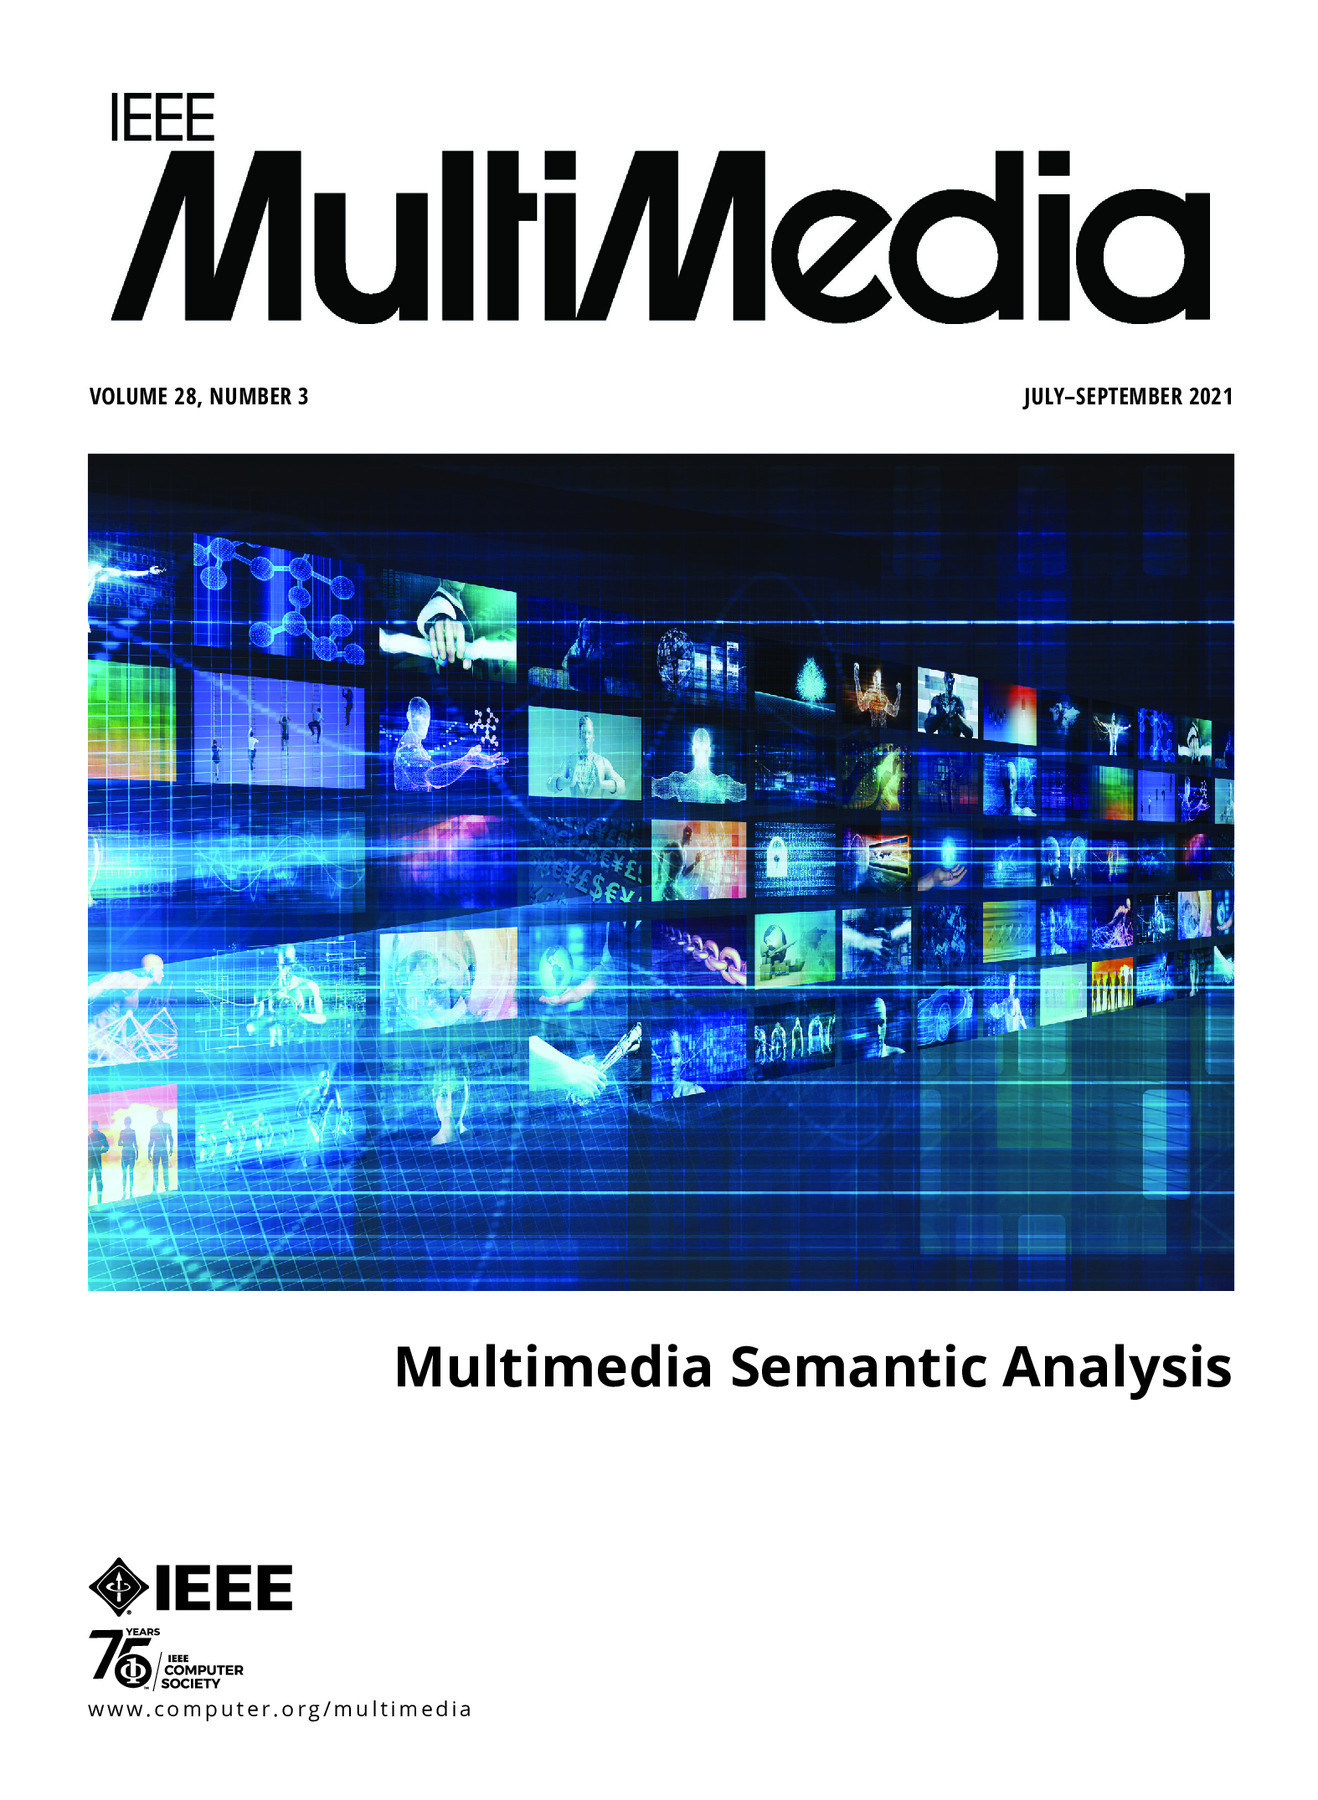 IEEE Multimedia July/August/September 2021 Vol. 28 No. 3